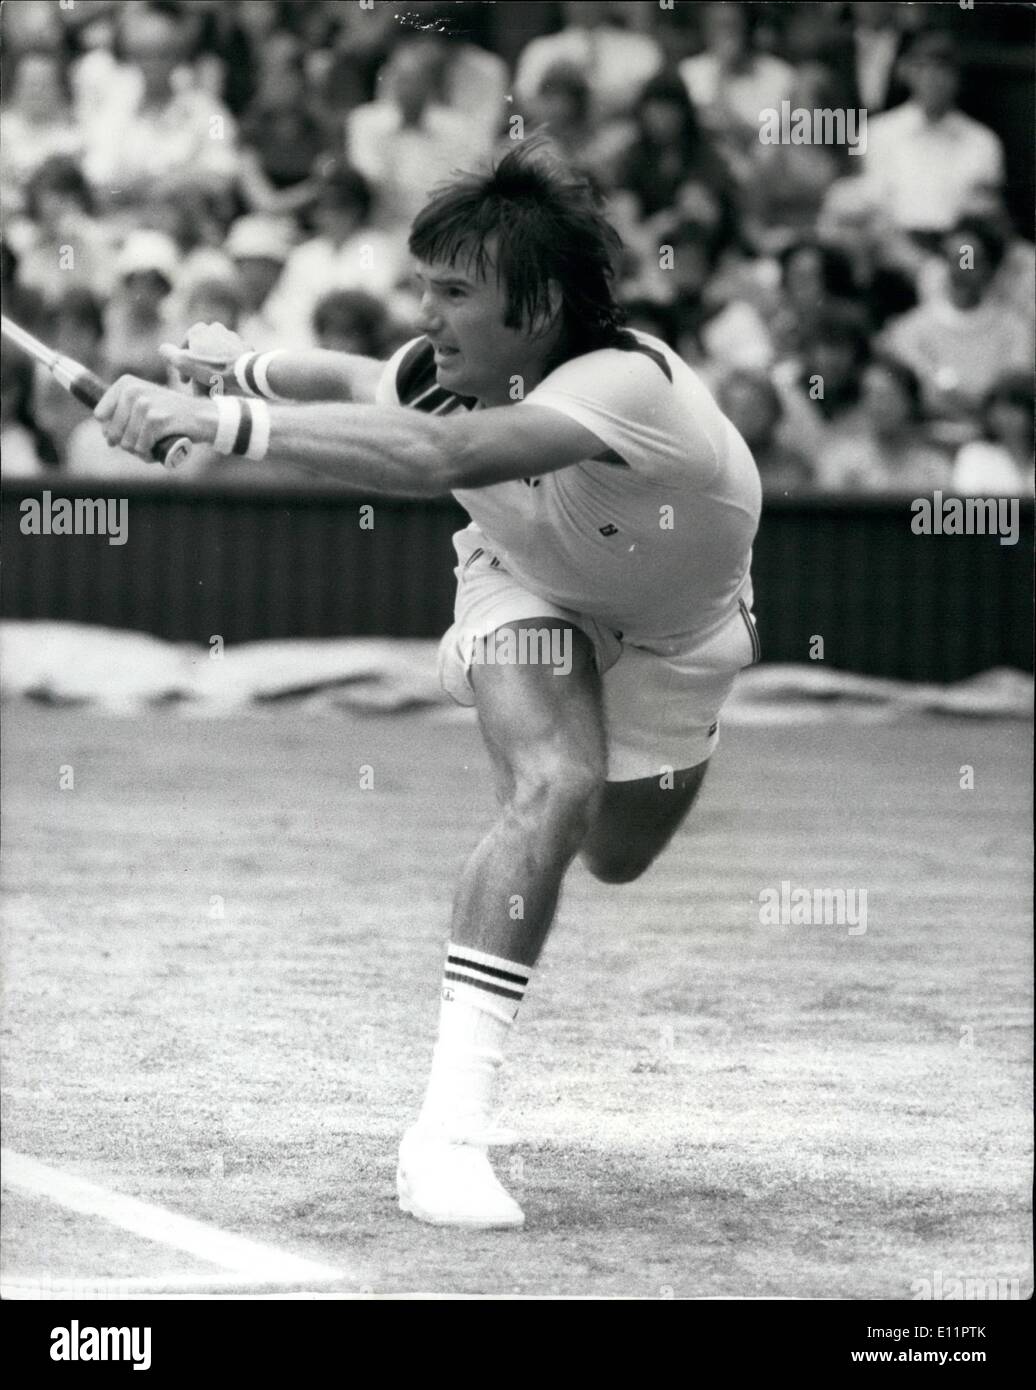 Giugno 06, 1979 - Wimbledon Tennis Jimmy Connors batte Marty Riessen: mostra fotografica di Jimmy Connors (USA) il n. 3 seme visto in azione sul Centre Court durante la sua partita contro Marty Riessen (USA) . Connors ha vinto in quattro set. ieri. Foto Stock